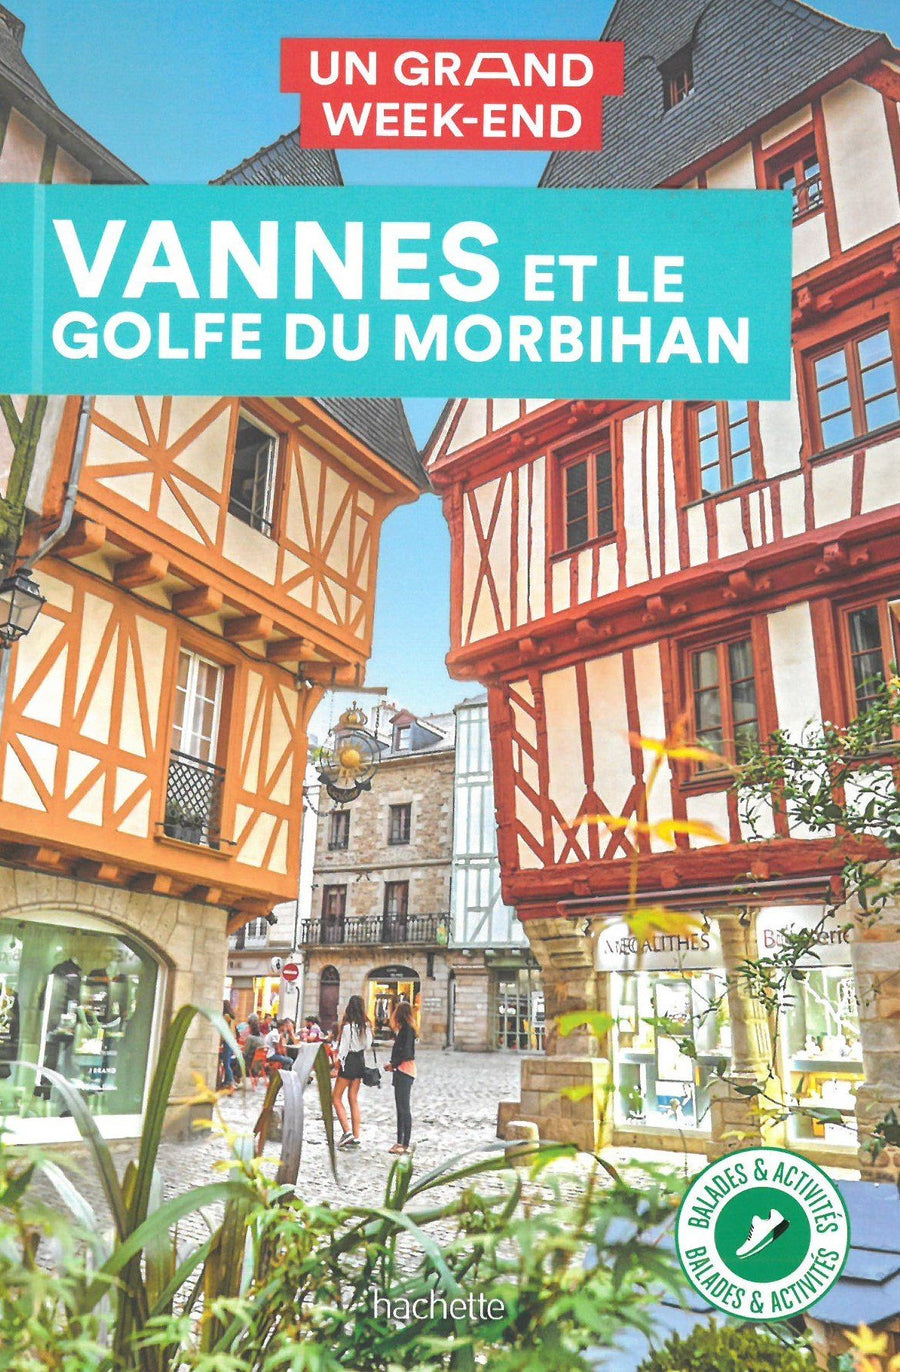 Guide de voyage - Un Grand Week-end : Vannes et le golfe du Morbihan - Édition 2021 | Hachette guide de voyage Hachette 